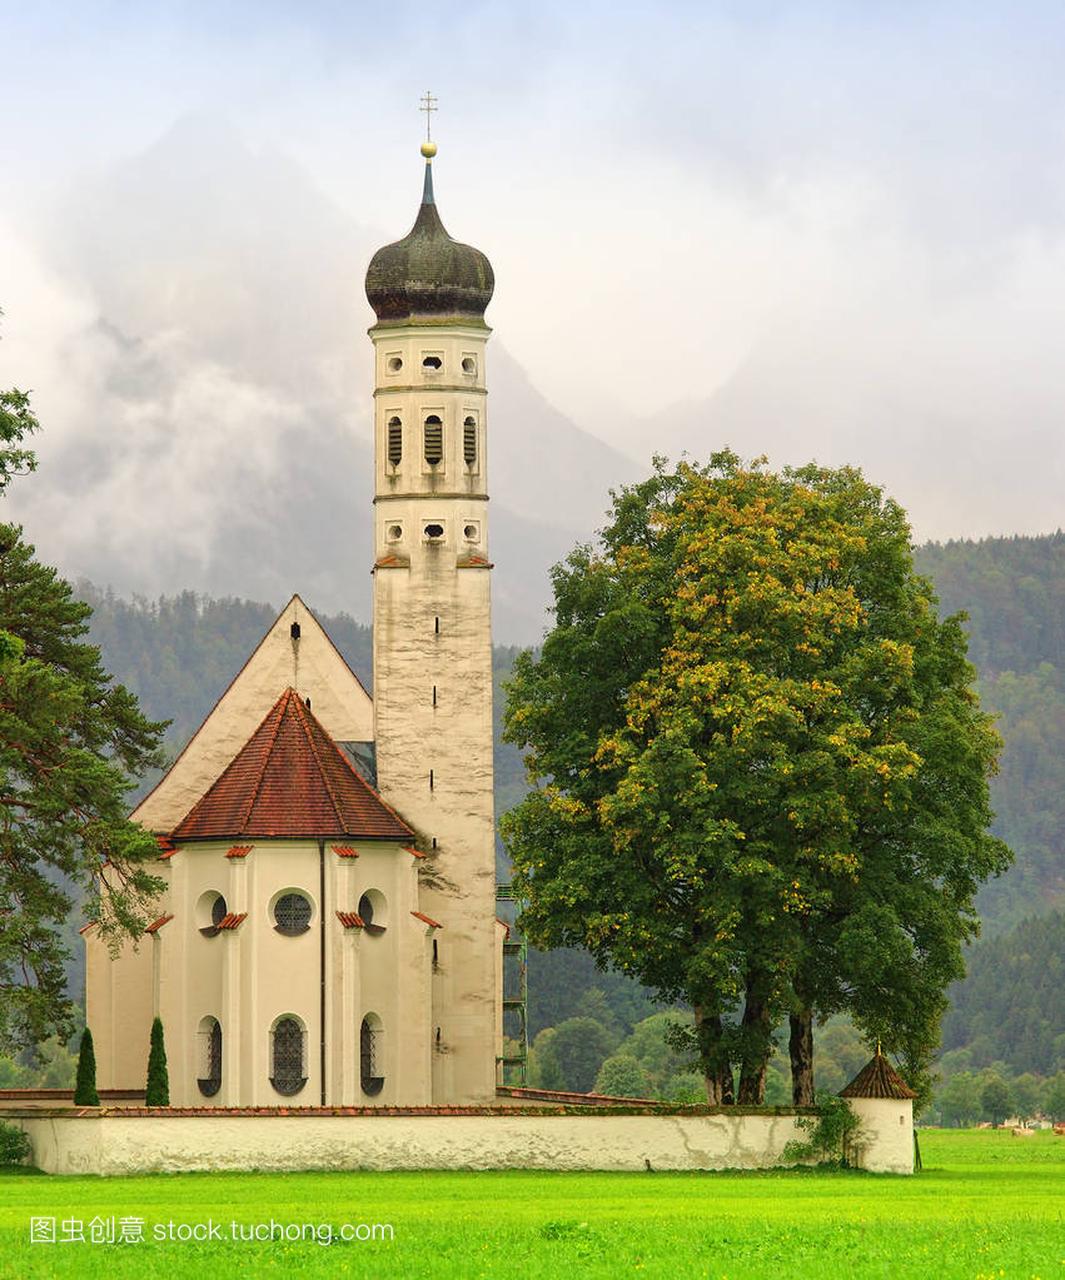 圣克洛曼教会在巴伐利亚, 德国